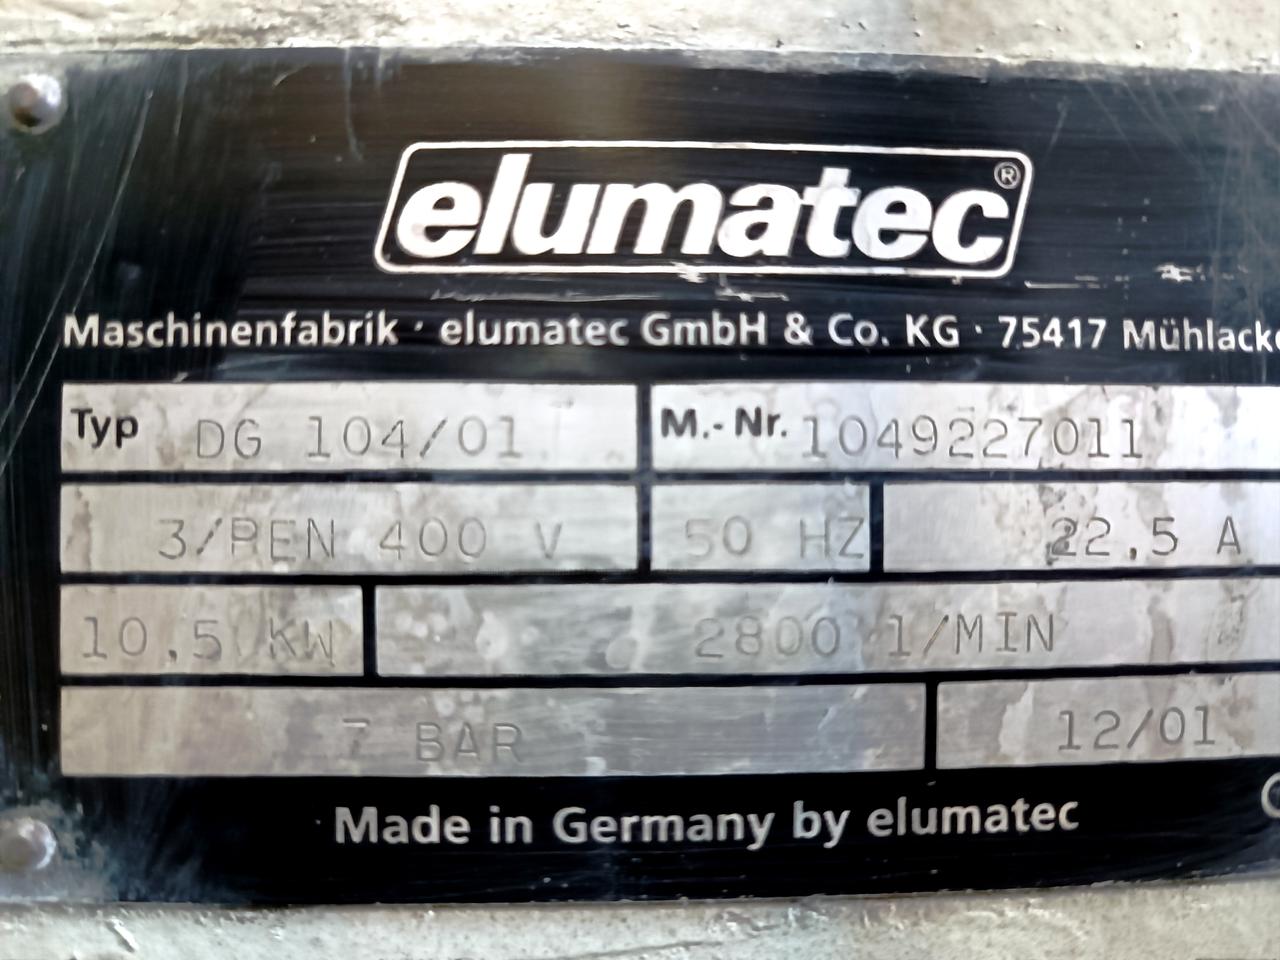 ELUMATEC DG 104/01 Автоматическая двухголовочная пила для резки алюминия и ПВХ (Б/У оборудование)